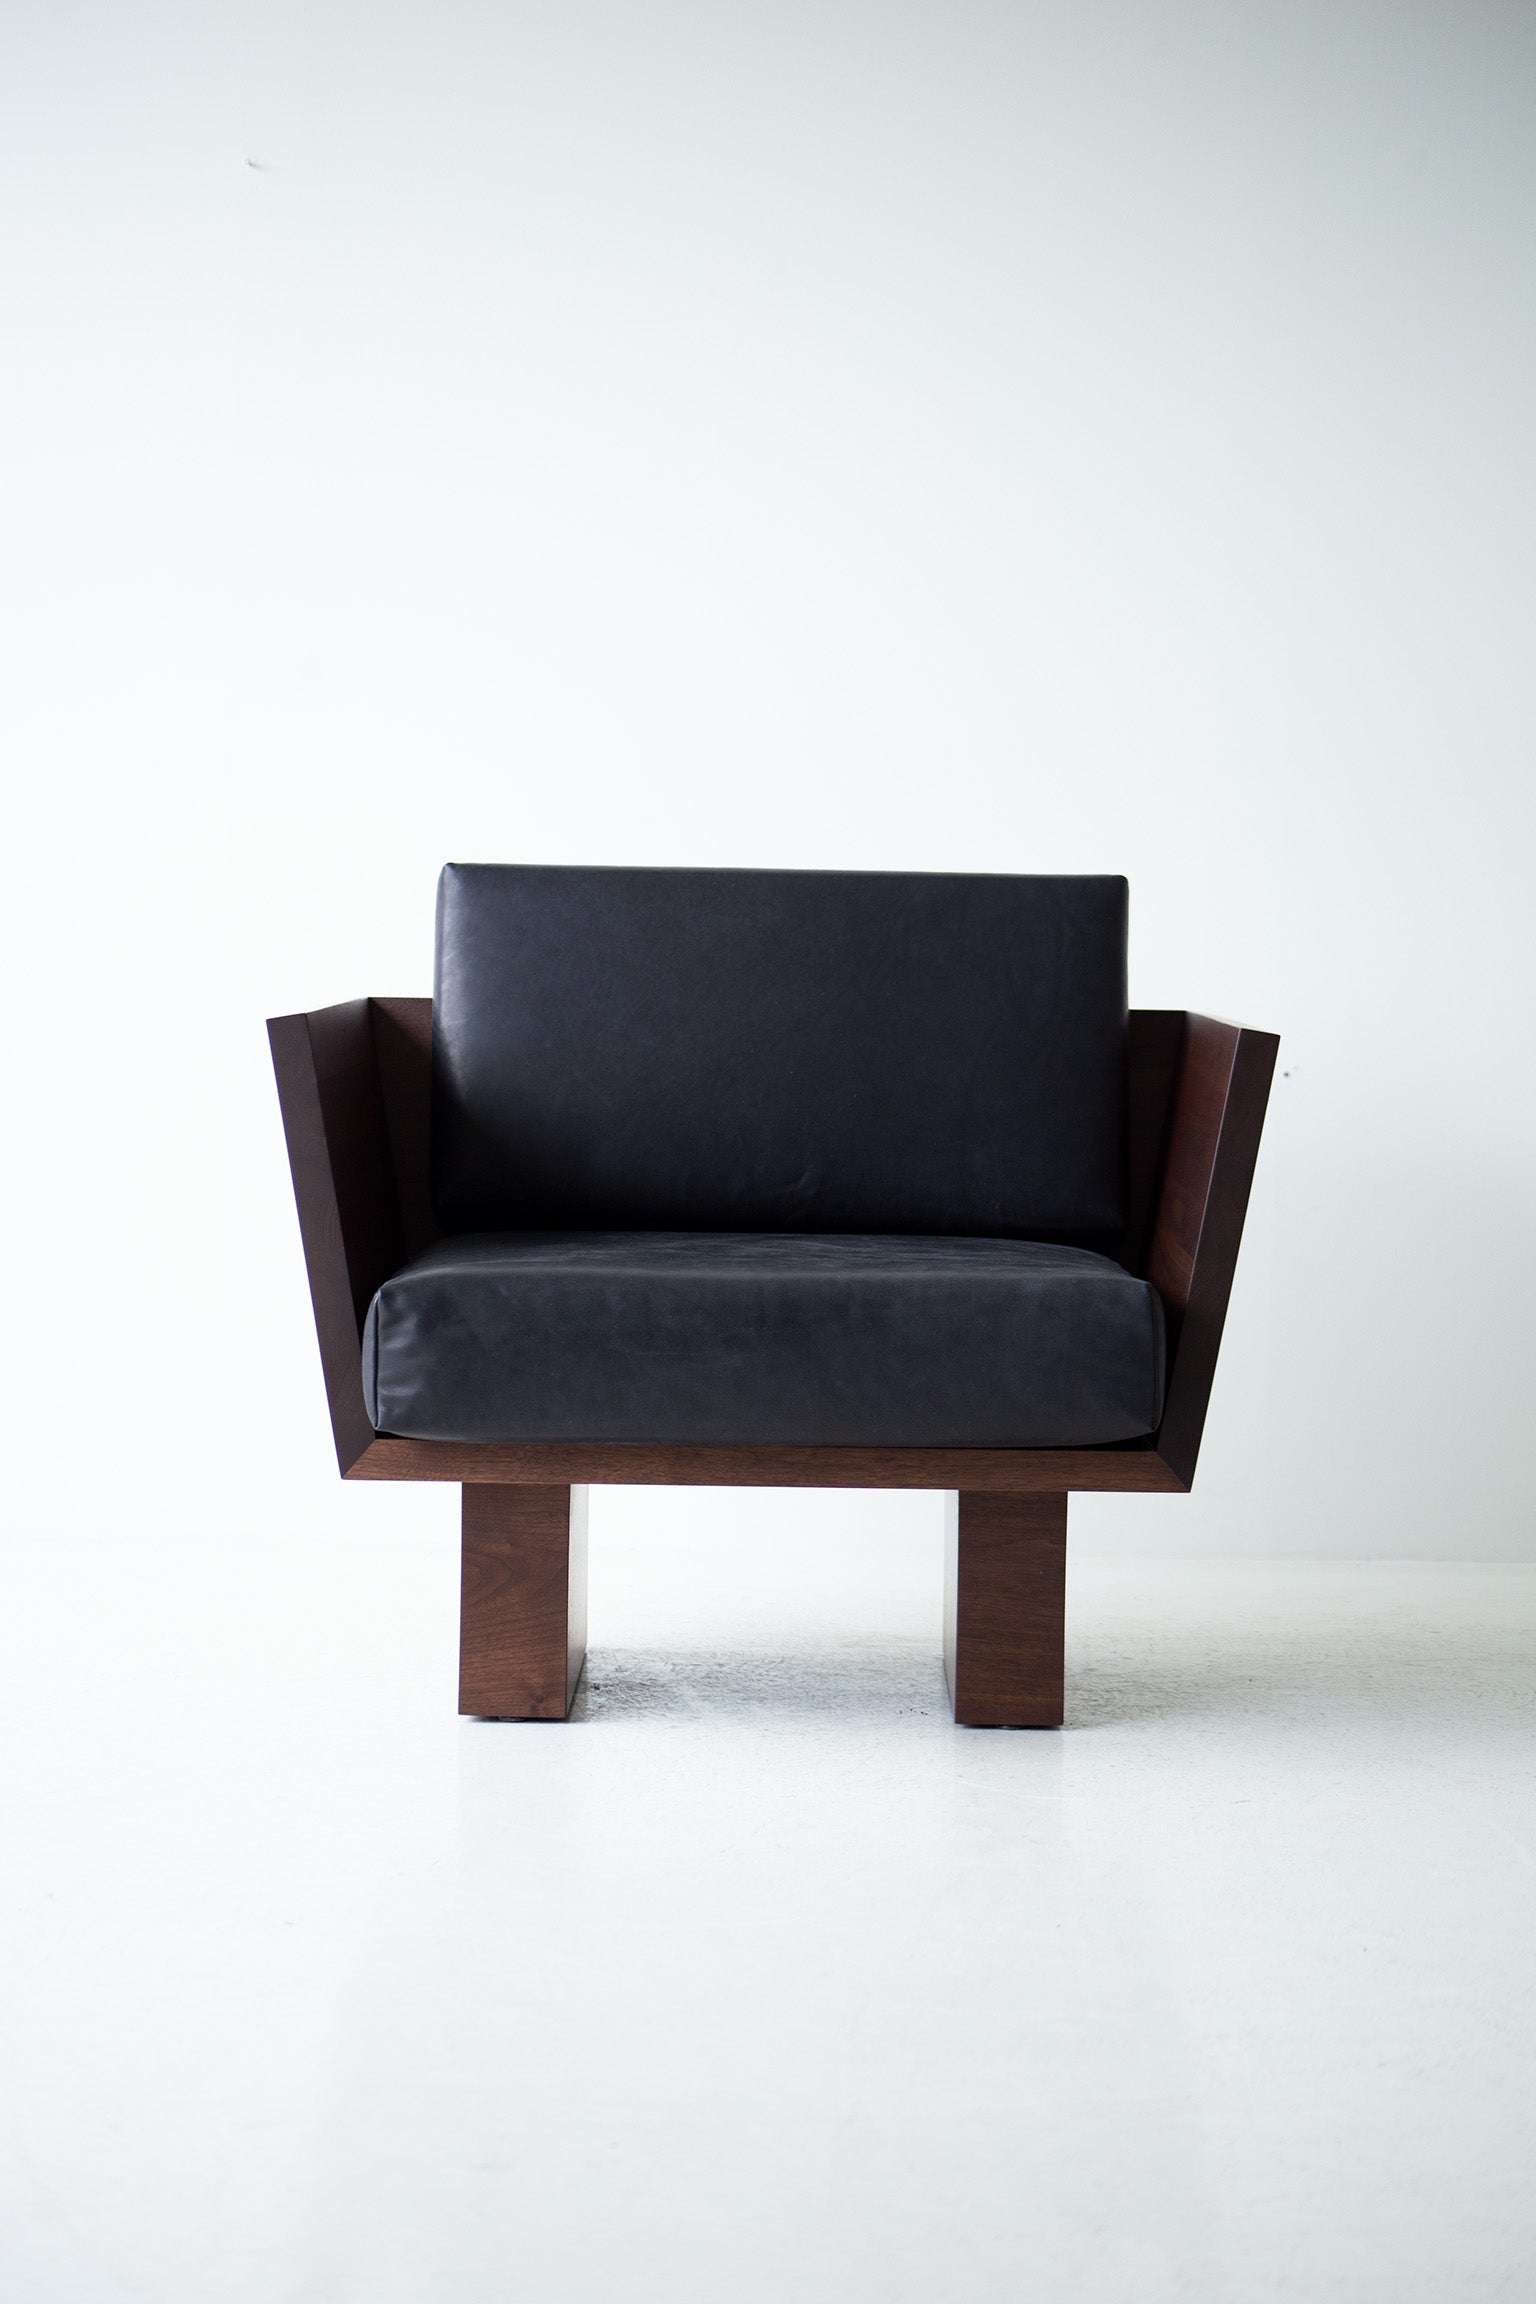 Suelo-Modern-Lounge-Chair-Walnut-03